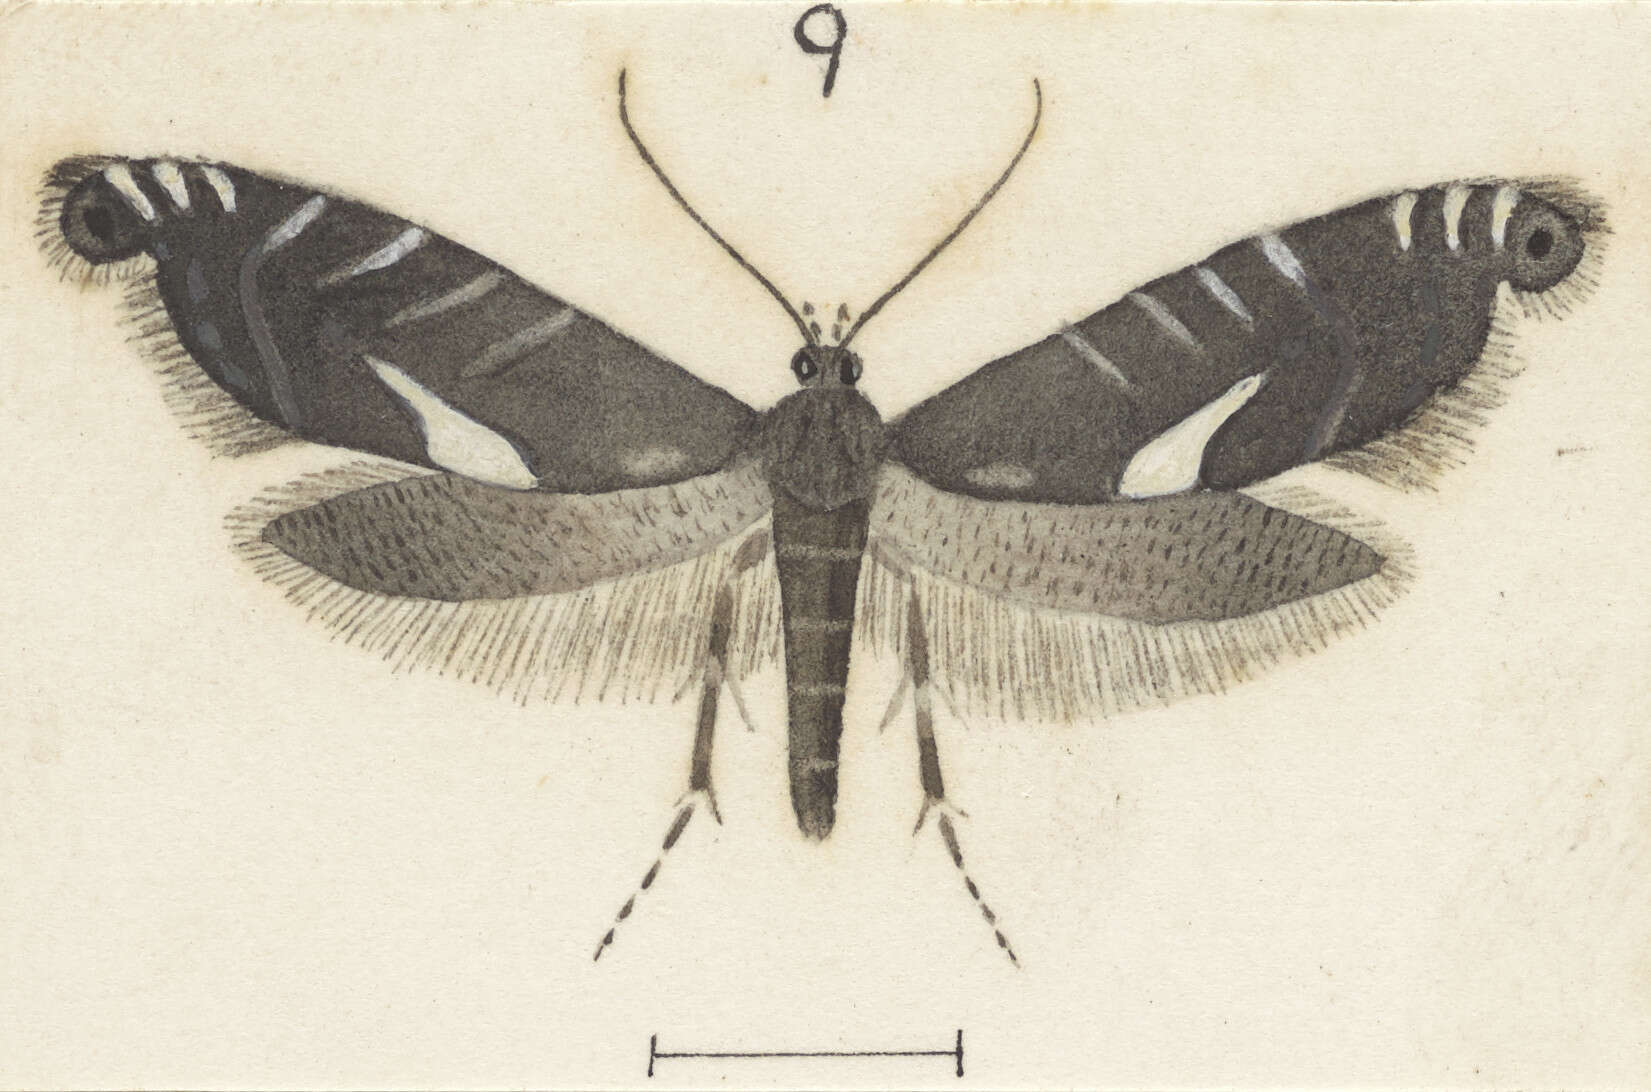 Image of Glyphipterix leptosema Meyrick 1888